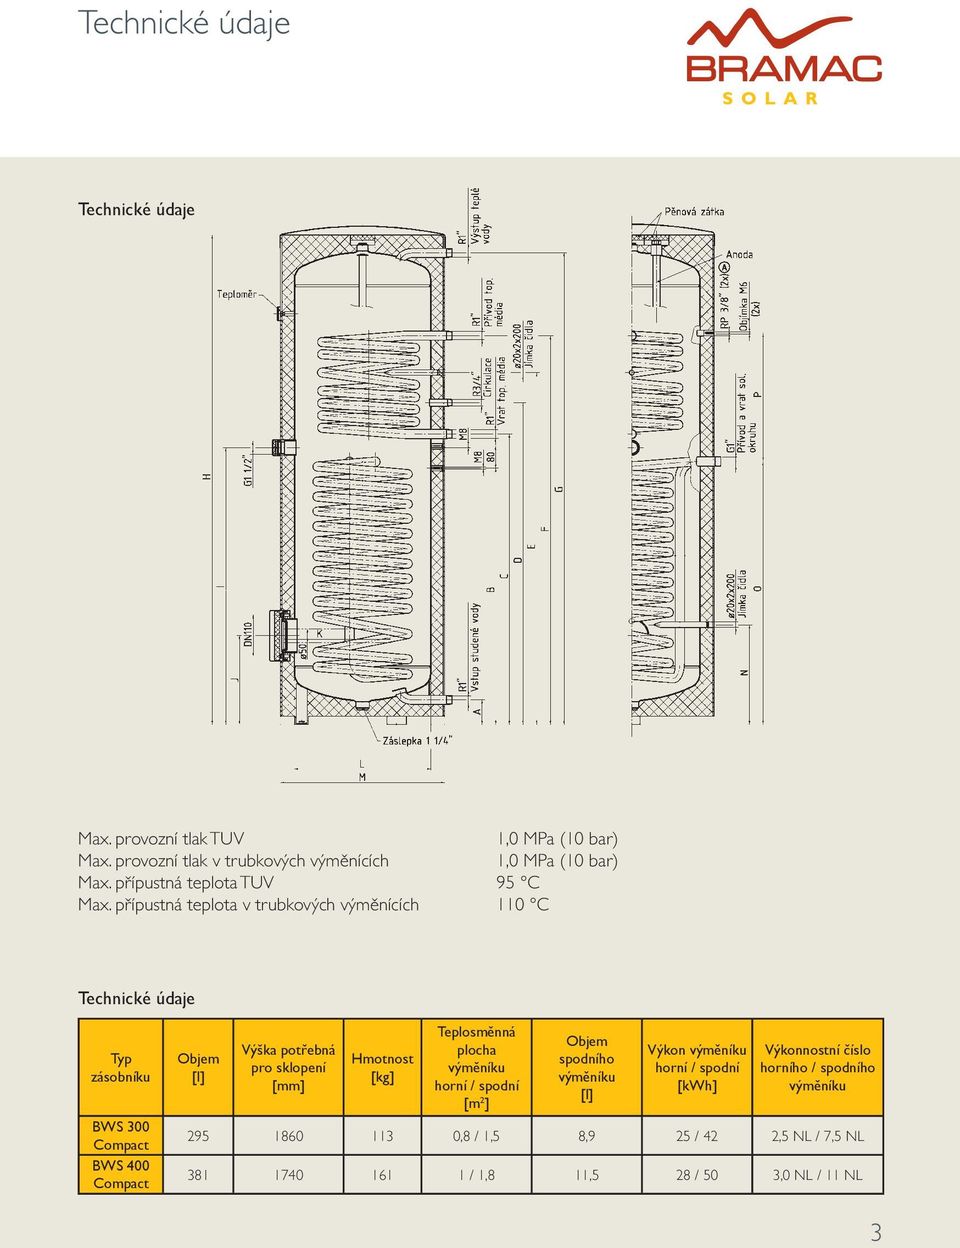 přípustná teplota v trubkových výměnících 110 C Technické údaje Typ zásobníku BWS 300 Compact BWS 400 Compact Objem [l] Výška potřebná pro sklopení